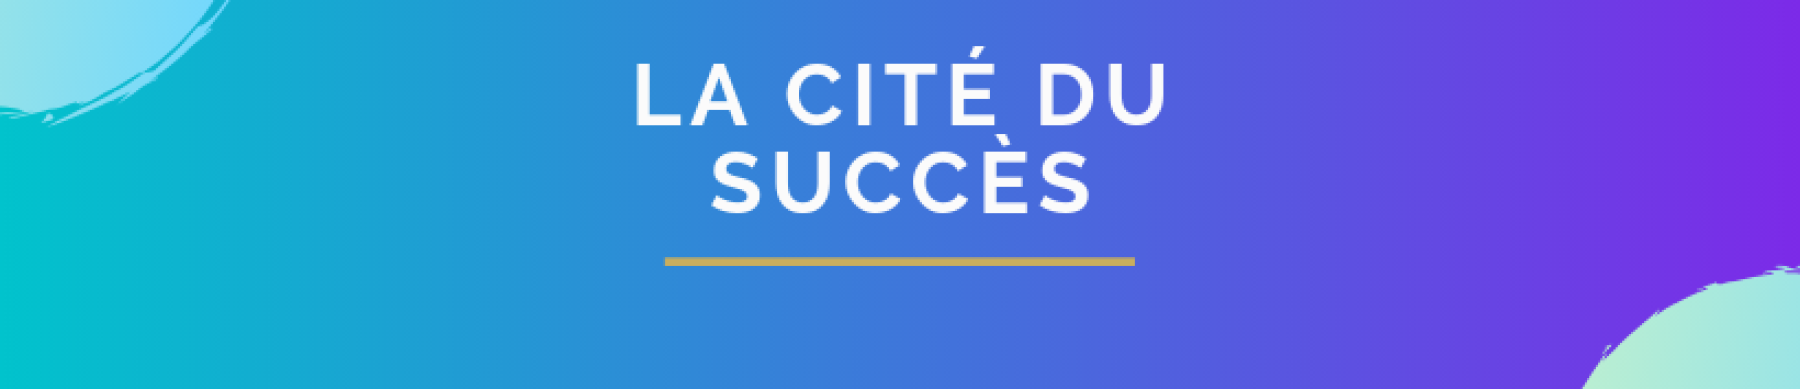 Succité - La Cité du Succès